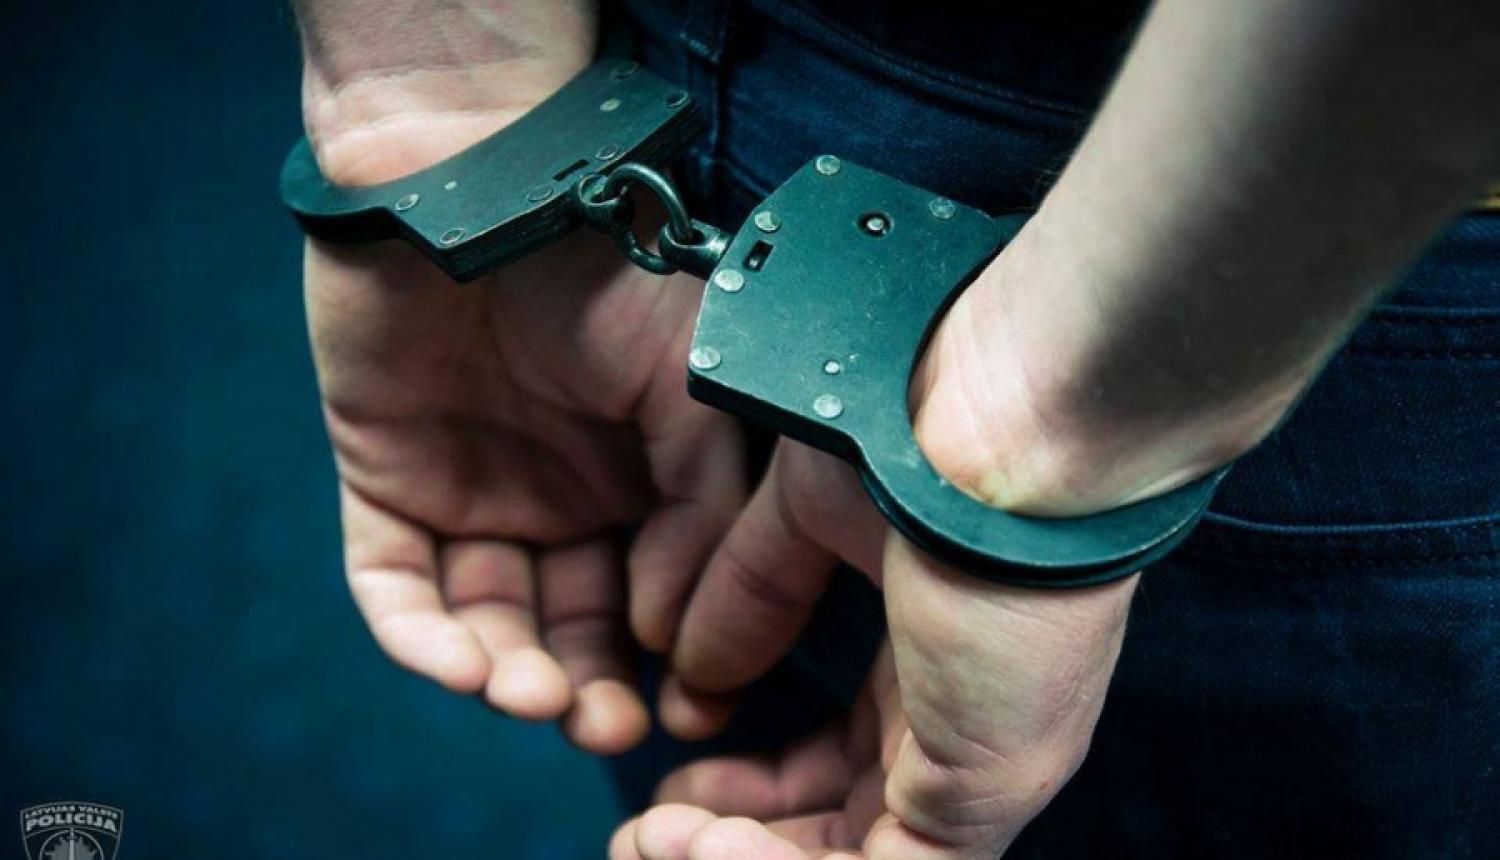 Valsts policija pabeidz izmeklēšanu kriminālprocesā par laupīšanām Liepājā